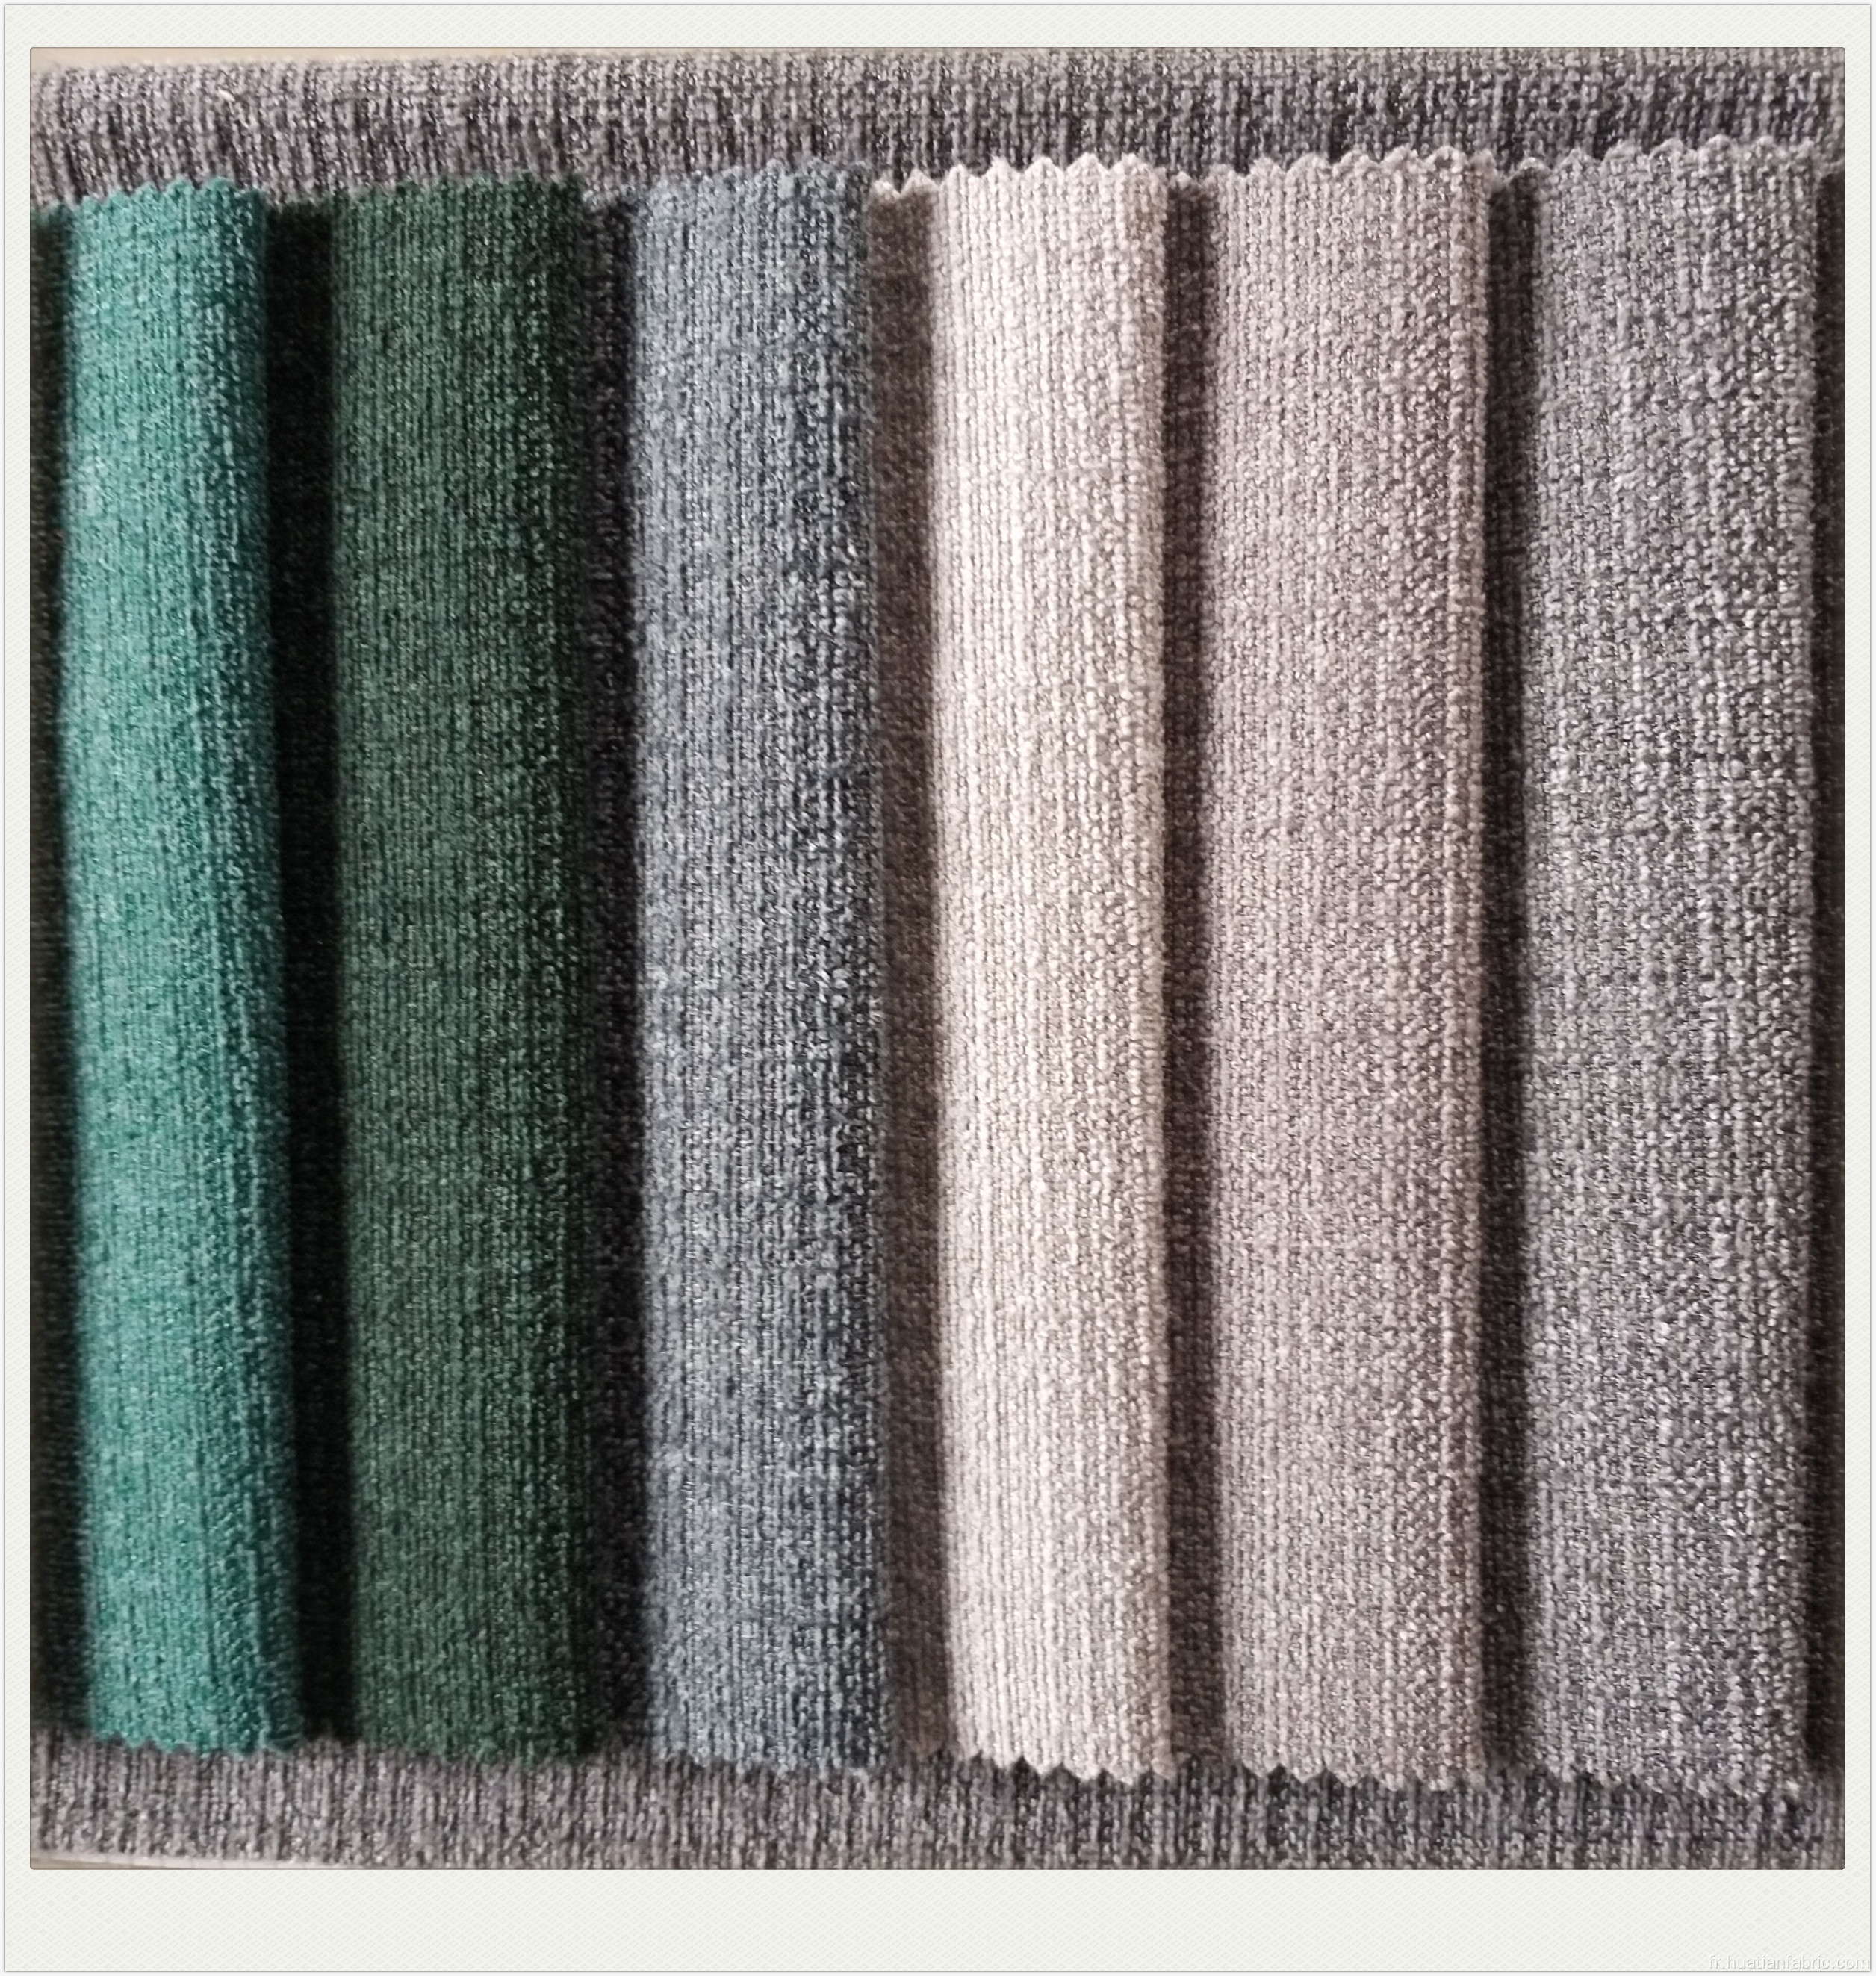 Tissu de canapé velours romain pour utilisation de textiles à domicile